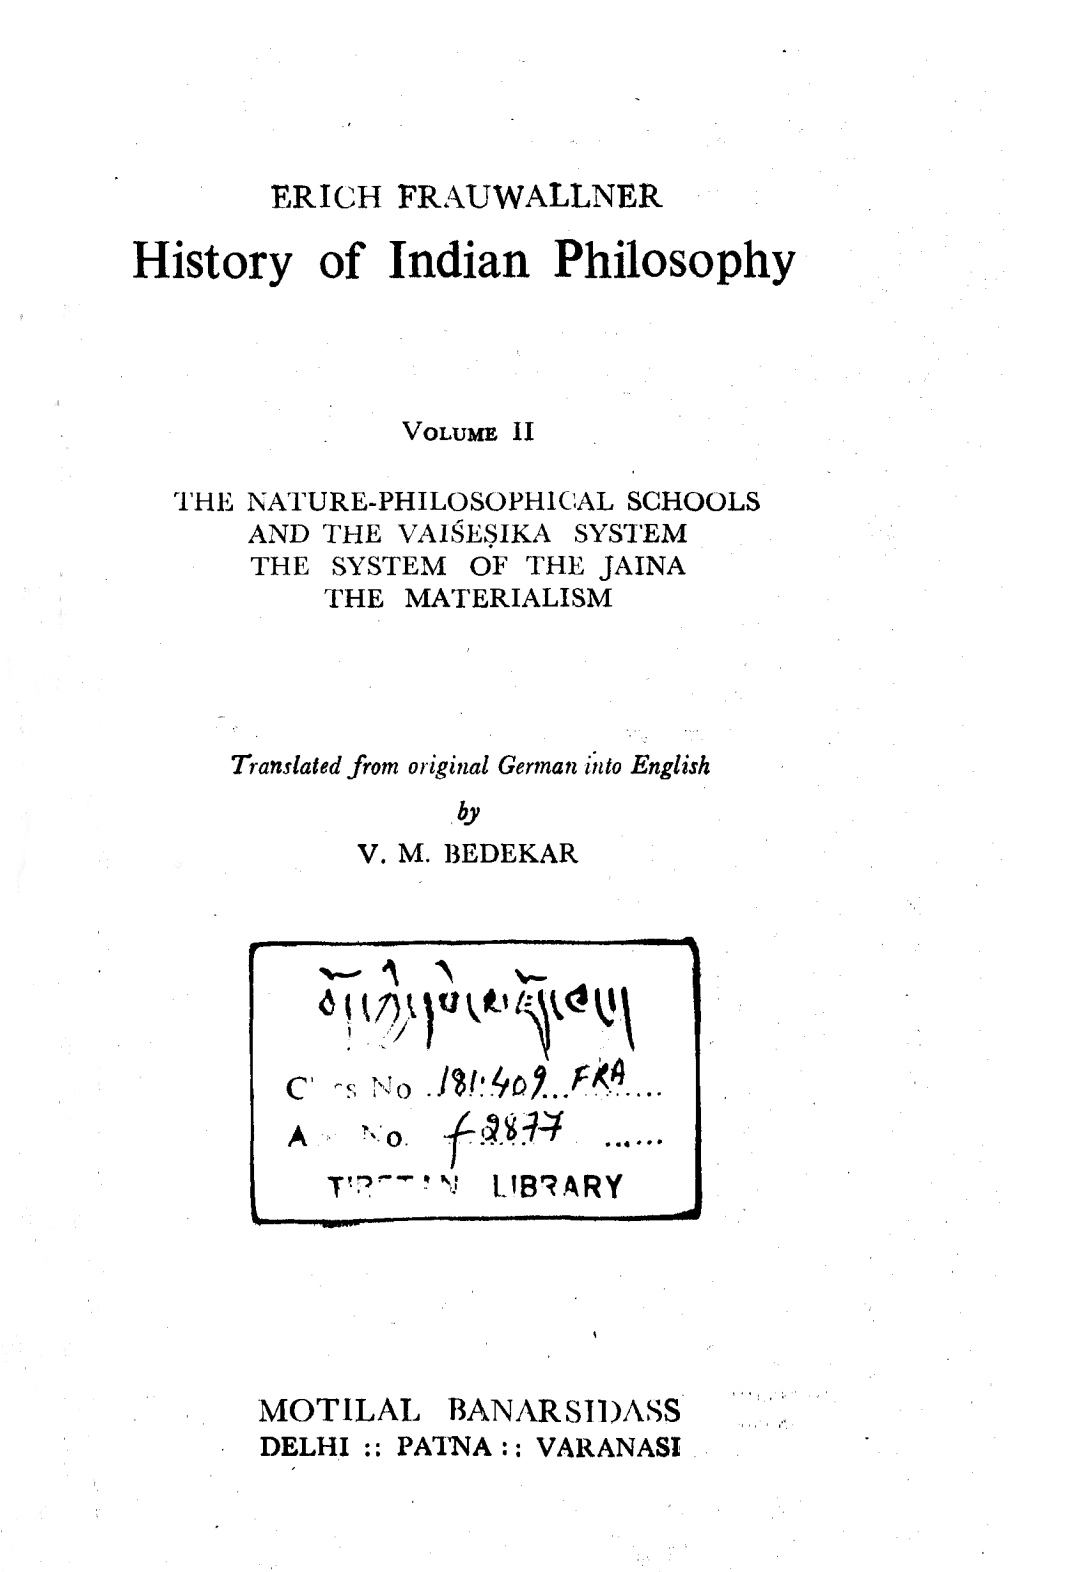 History of Indian Philosophy Vol. 2 Bedekar-front.jpg